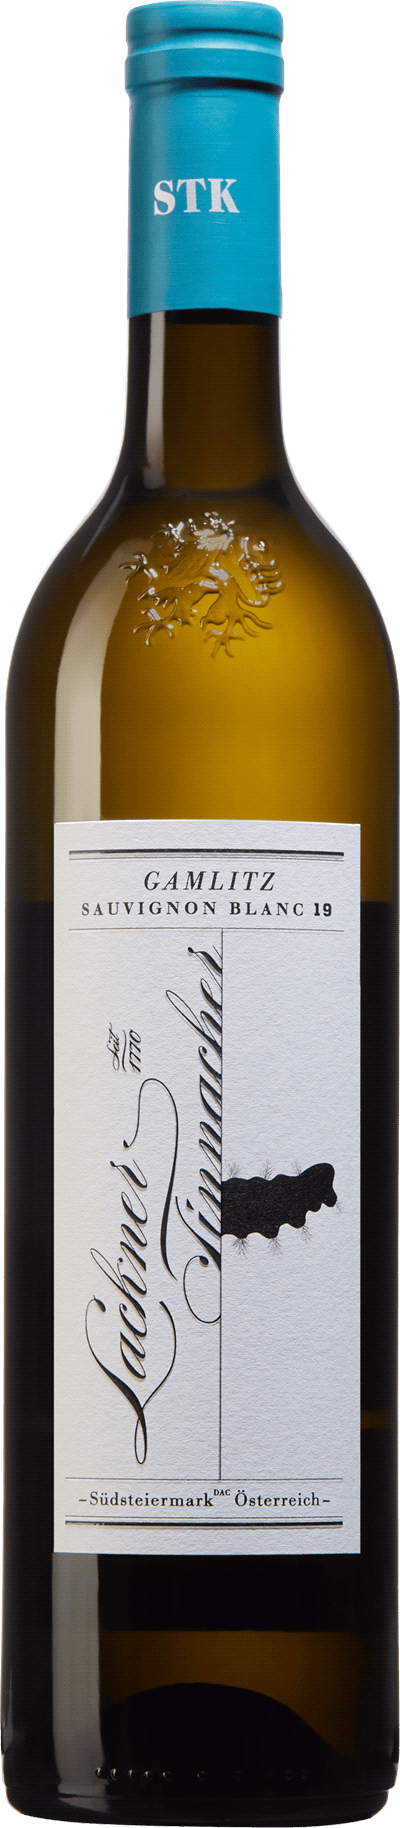 Gamlitz Sauvignon Blanc